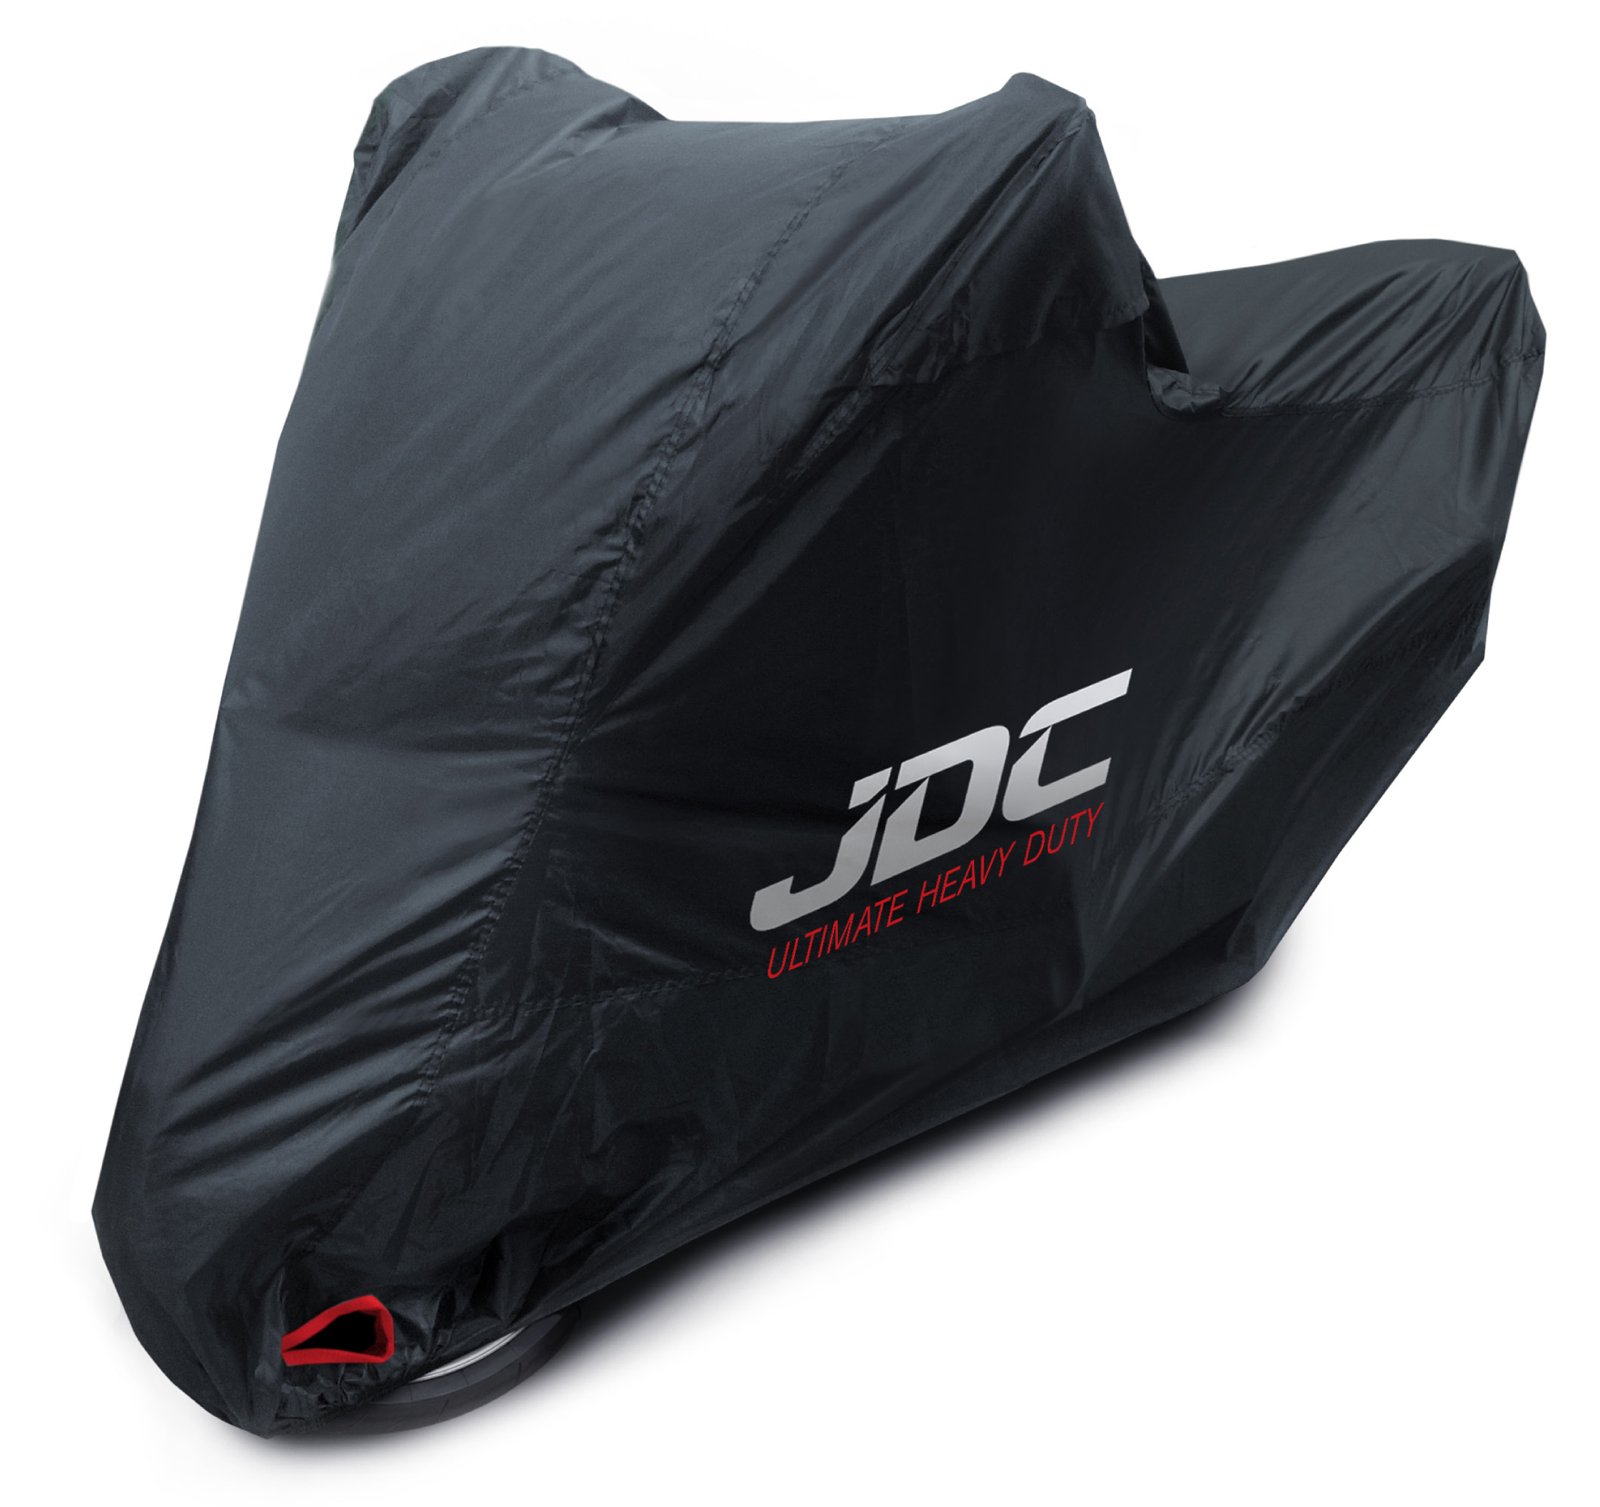 JDC 100% wasserdichte Motorradabdeckung - Ultimate Heavy Duty (Extra strapazierfähig, weiches Futter, hitzebeständig, verschweißte Nähte) - XL von JDC